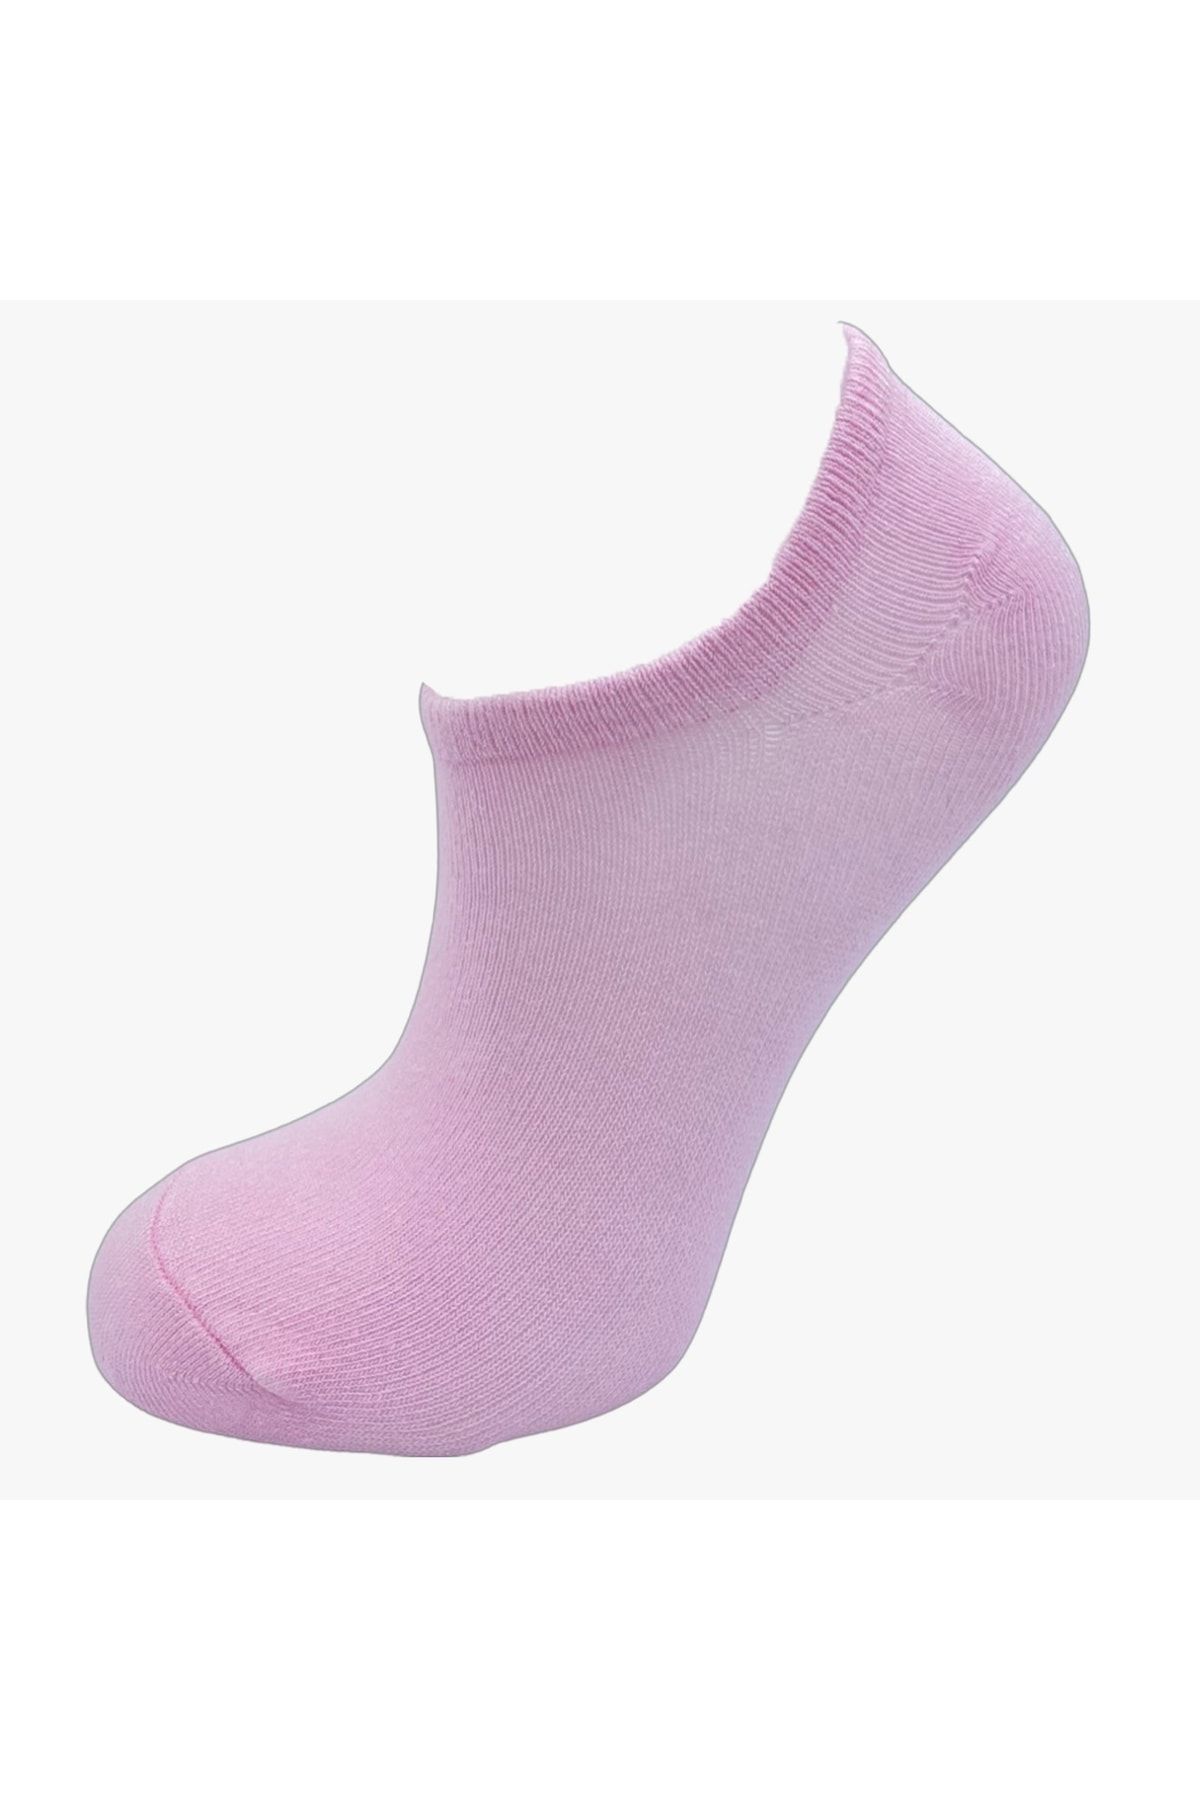 pazariz Kadın Patik Çorap 3 Adet